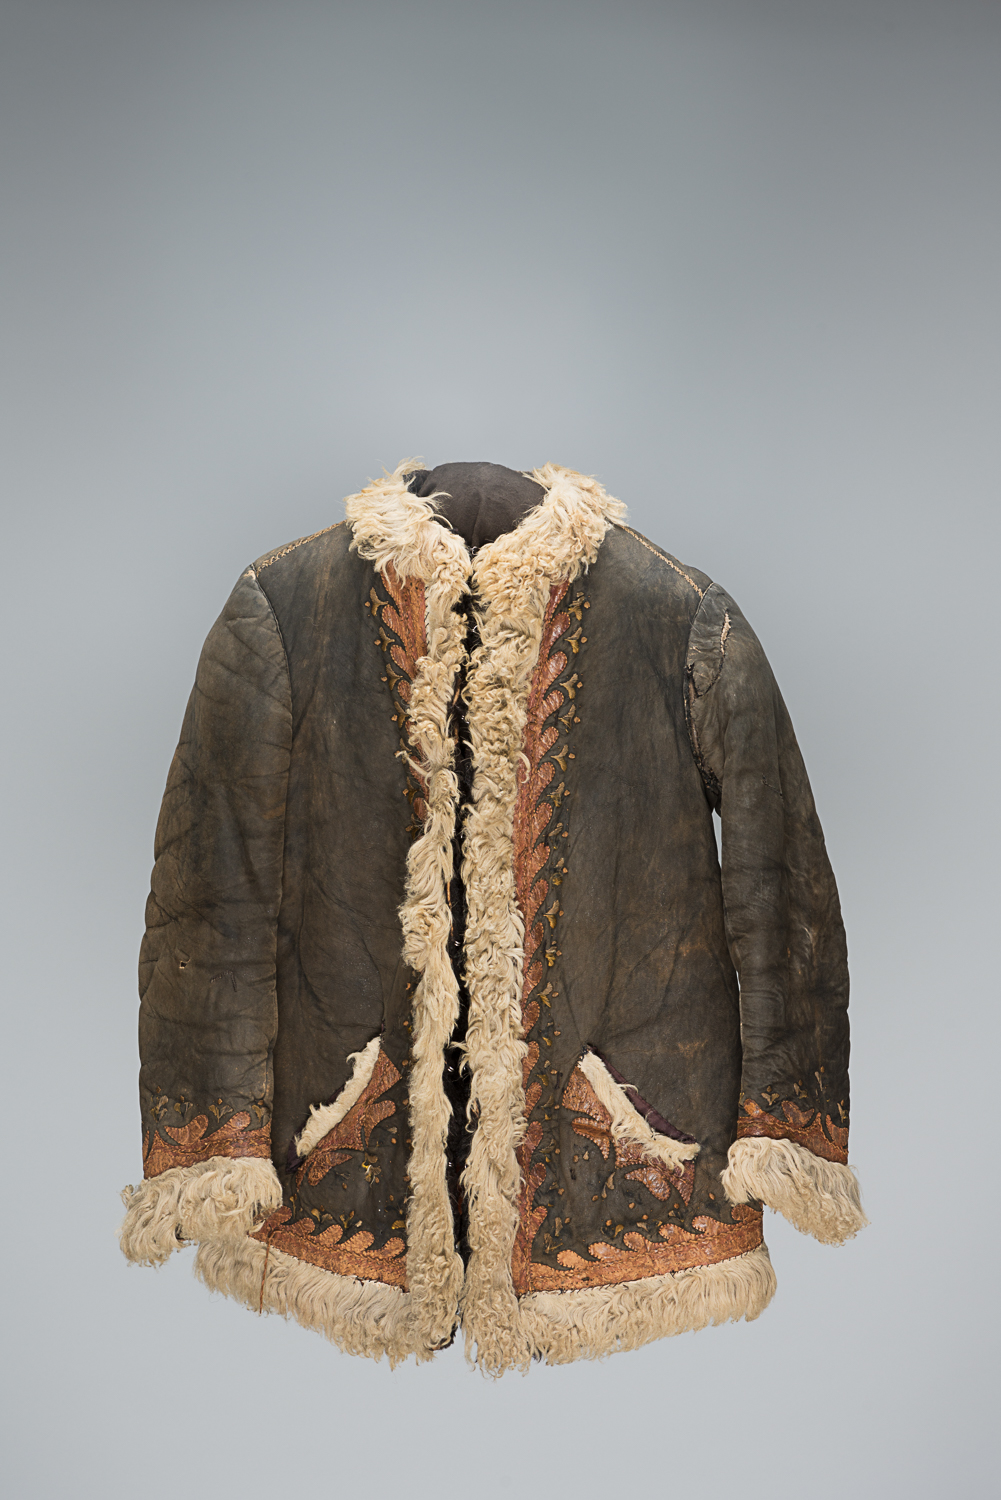 Ce manteau de cuir brun est doublé en laine de mouton et brodé de motifs roses. Il a appartenu à Blanca Pinsker originaire de Bialystok en Pologne. (Photo : Peter Berra)